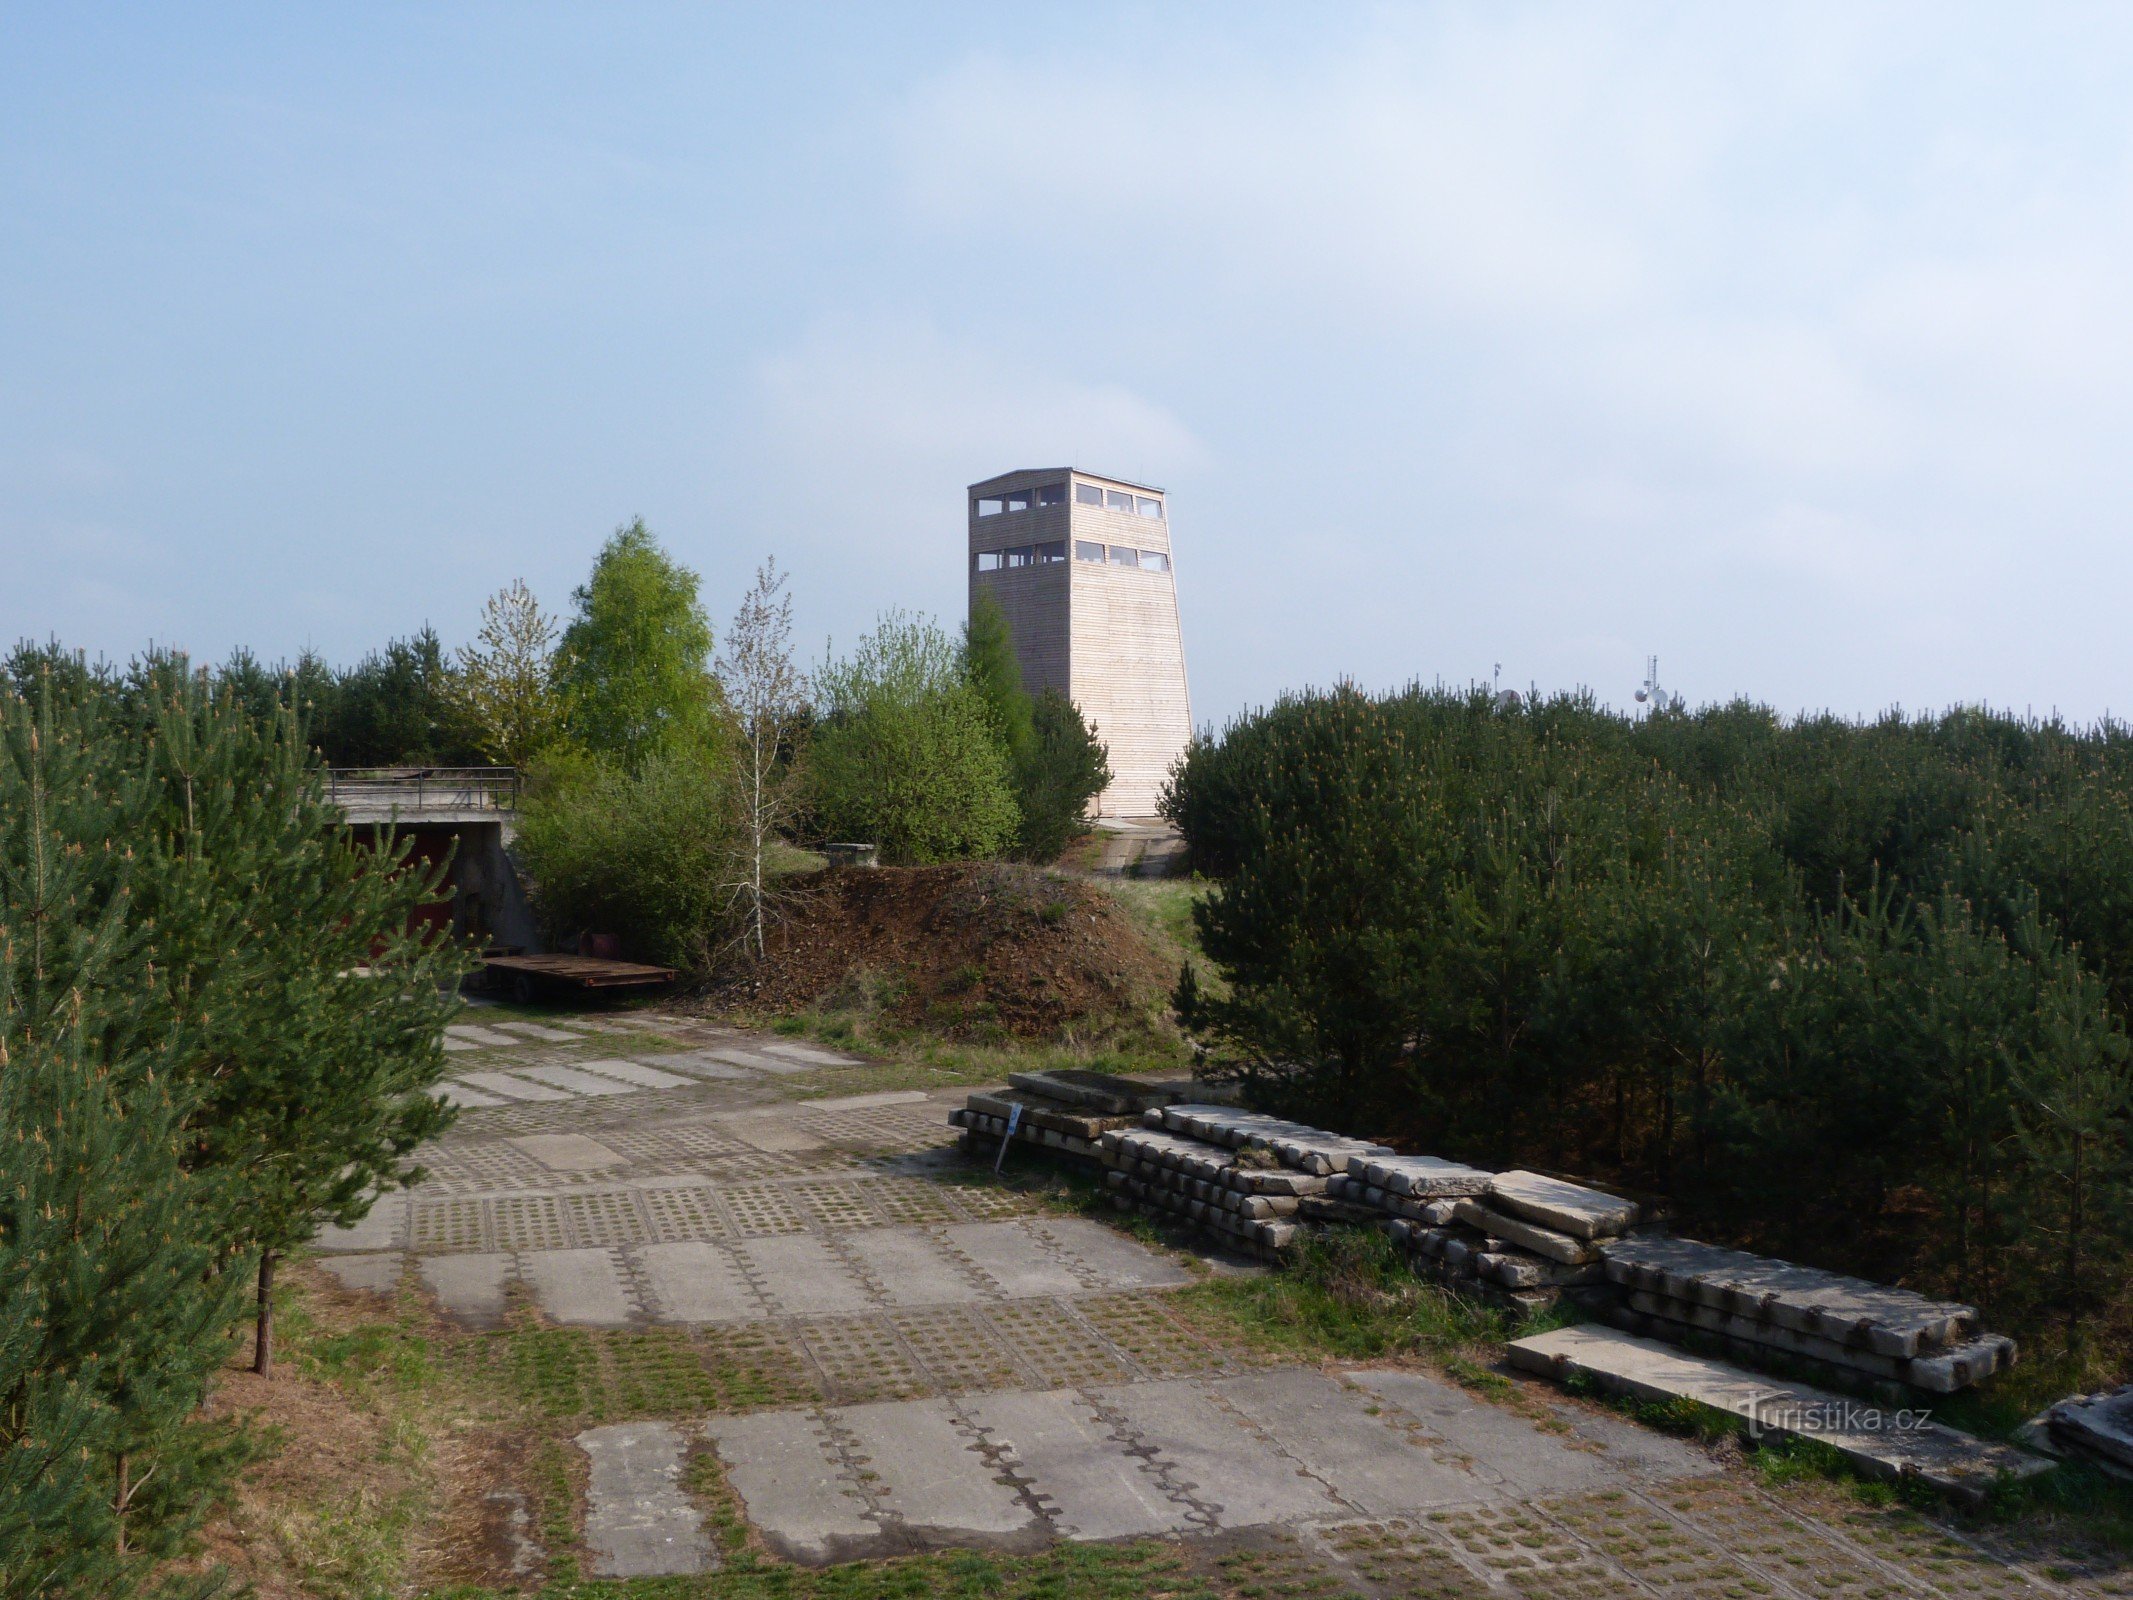 Turnul de observație Na Vrších - Břasy